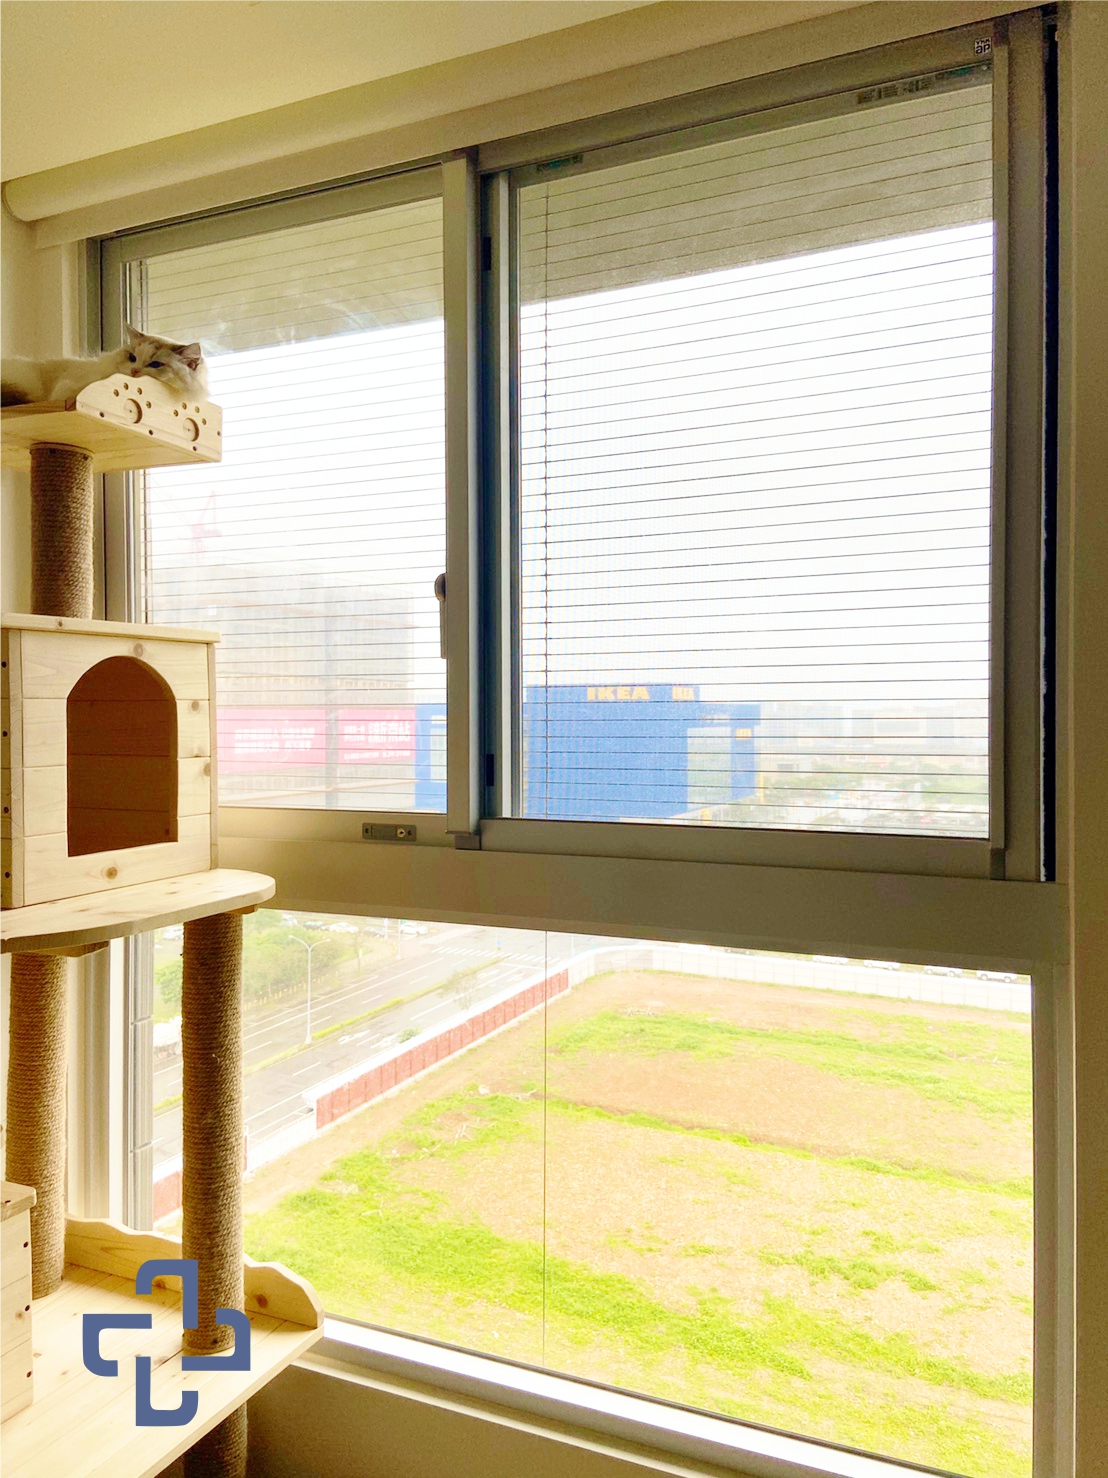 防霾紗網不是防貓網！防霾紗窗只能減少空氣髒汙，防貓隱形鐵窗才能確實的防貓咪墜樓、離家出走